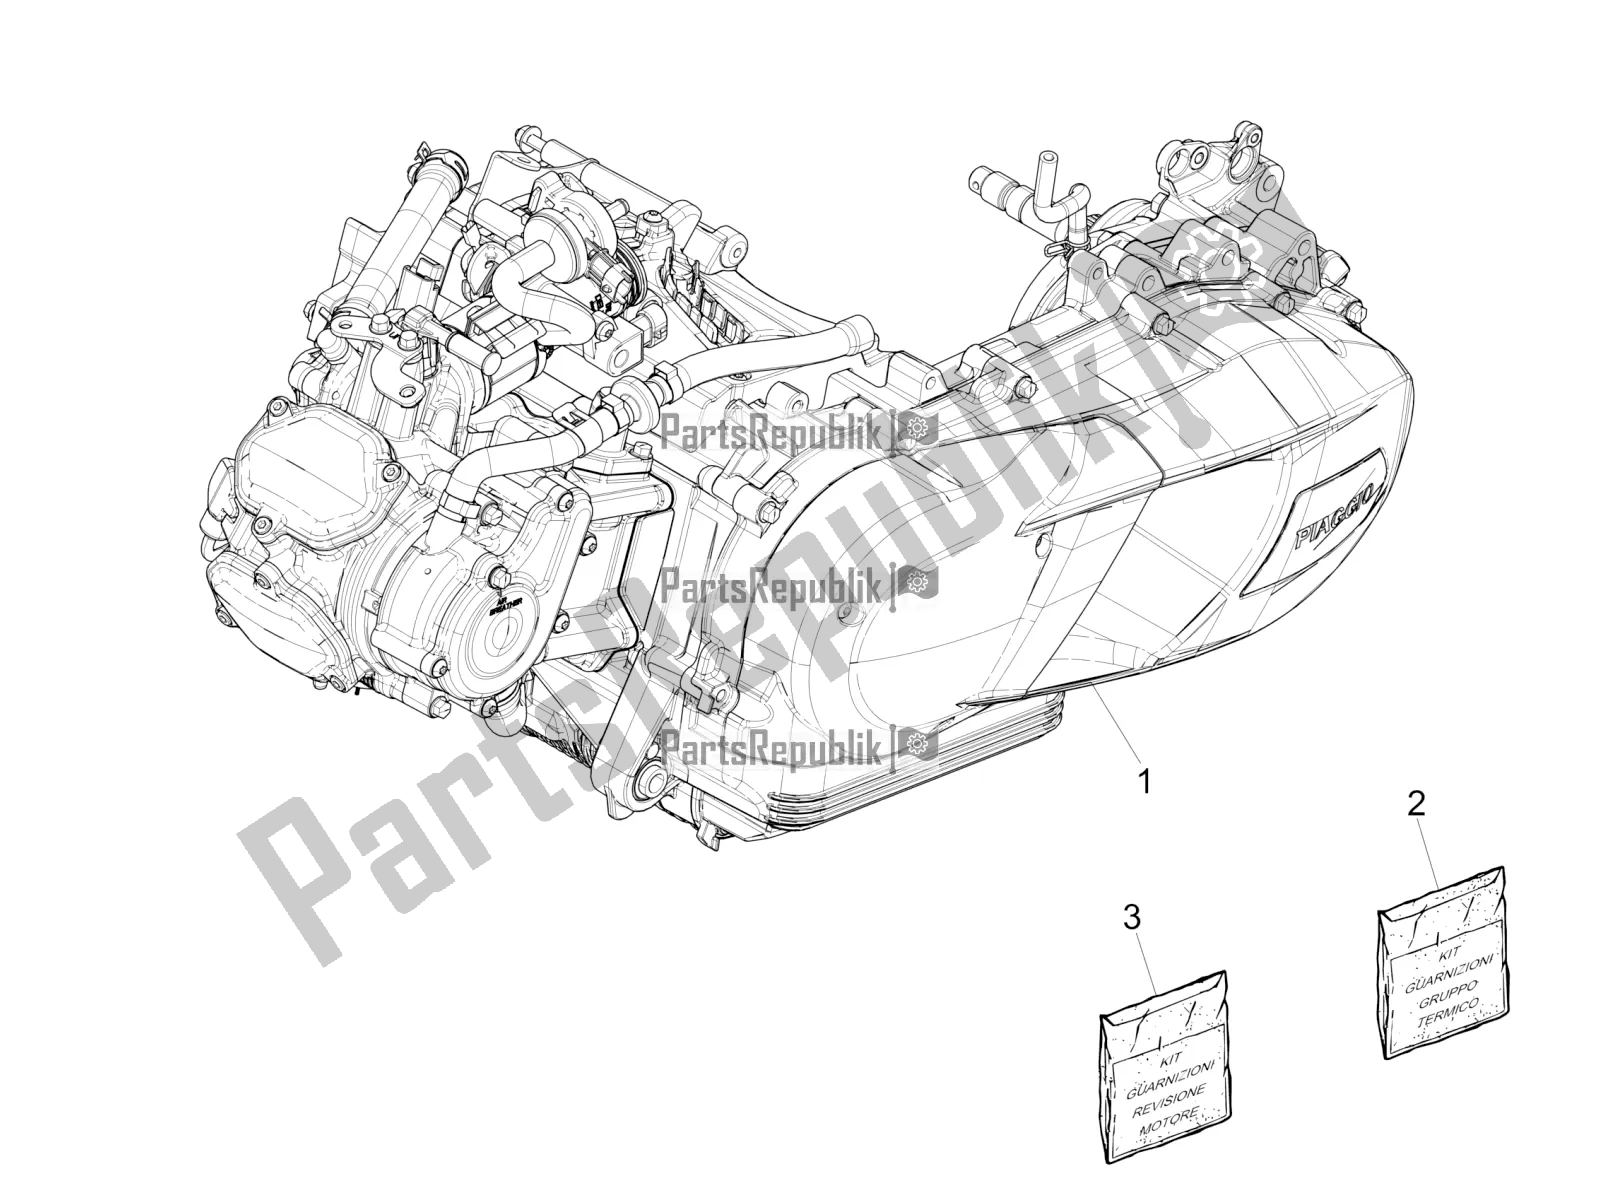 Alle onderdelen voor de Motor Assemblage van de Vespa GTS 125 Super ABS Iget Apac 2017